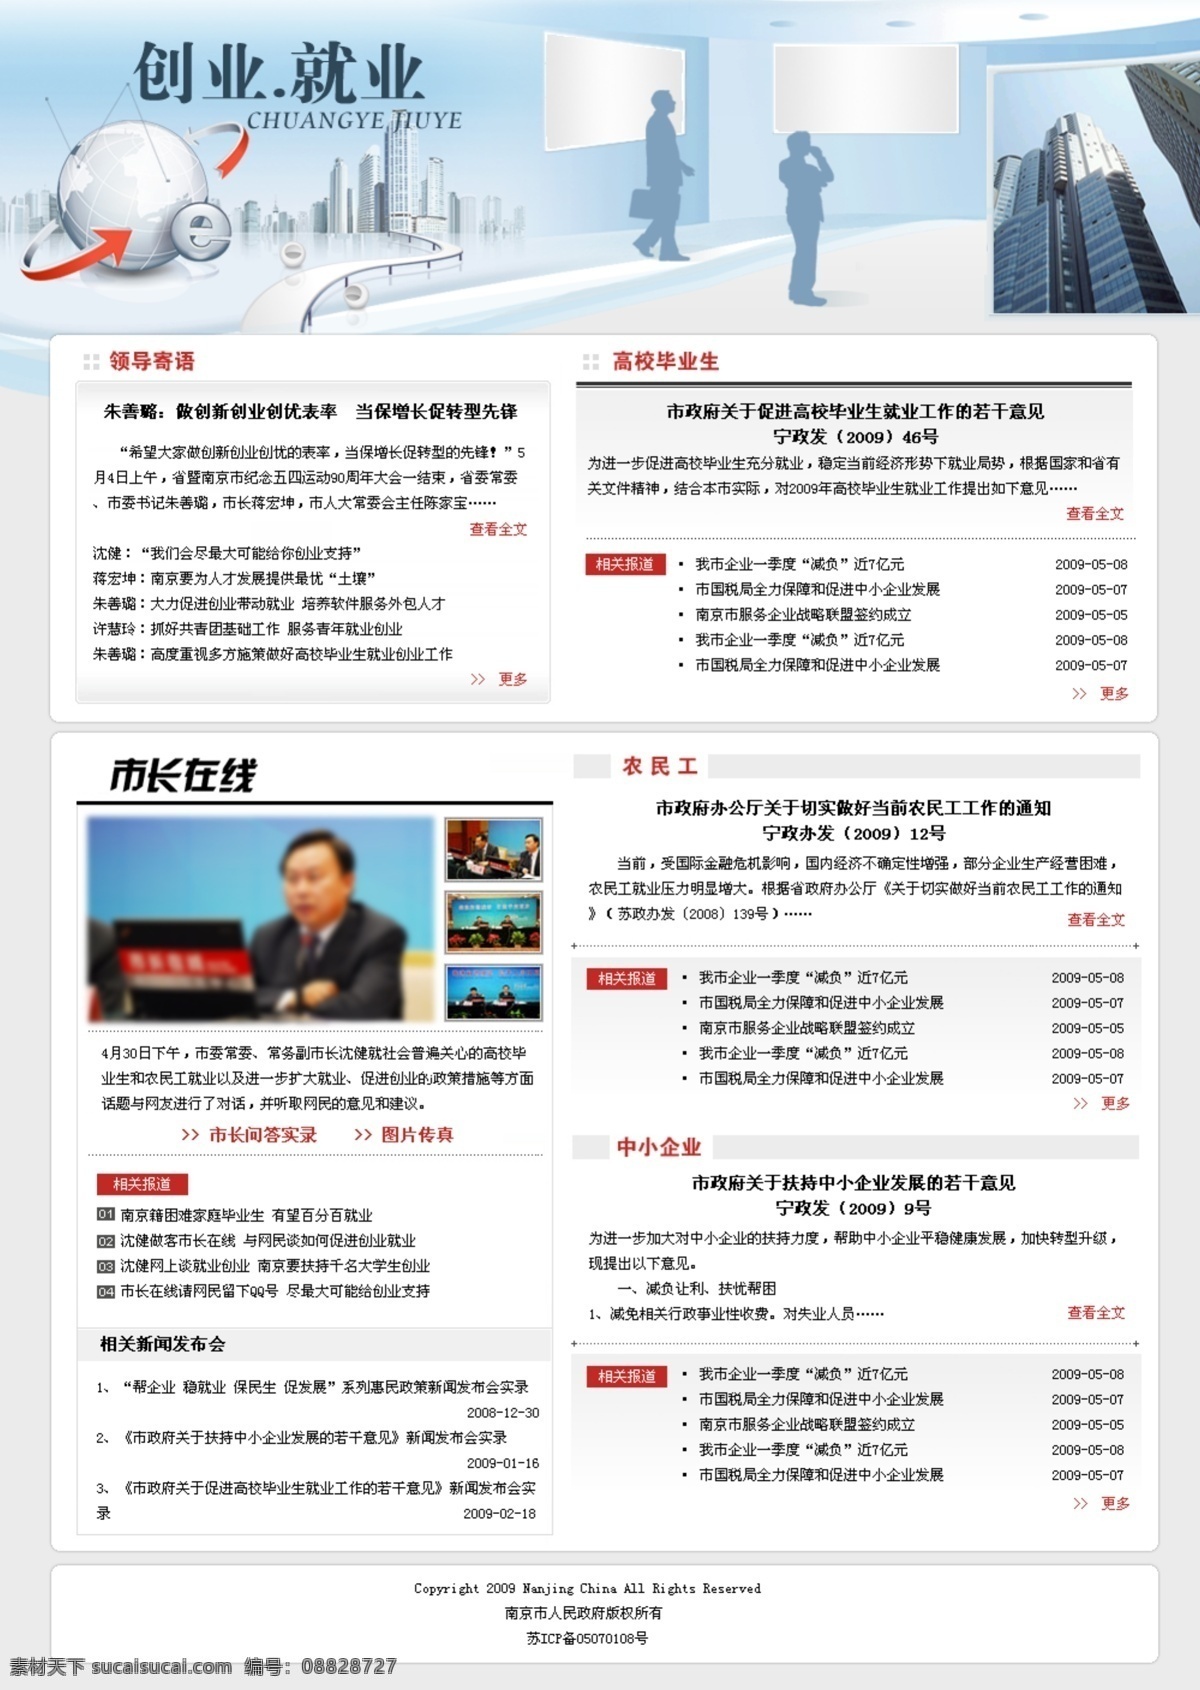 网页专题设计 创业就业 网页 模板 市政府 文明 中国 和谐 社会 蓝色调 灰色调 特色 专题 中文模版 网页模板 源文件 网页设计